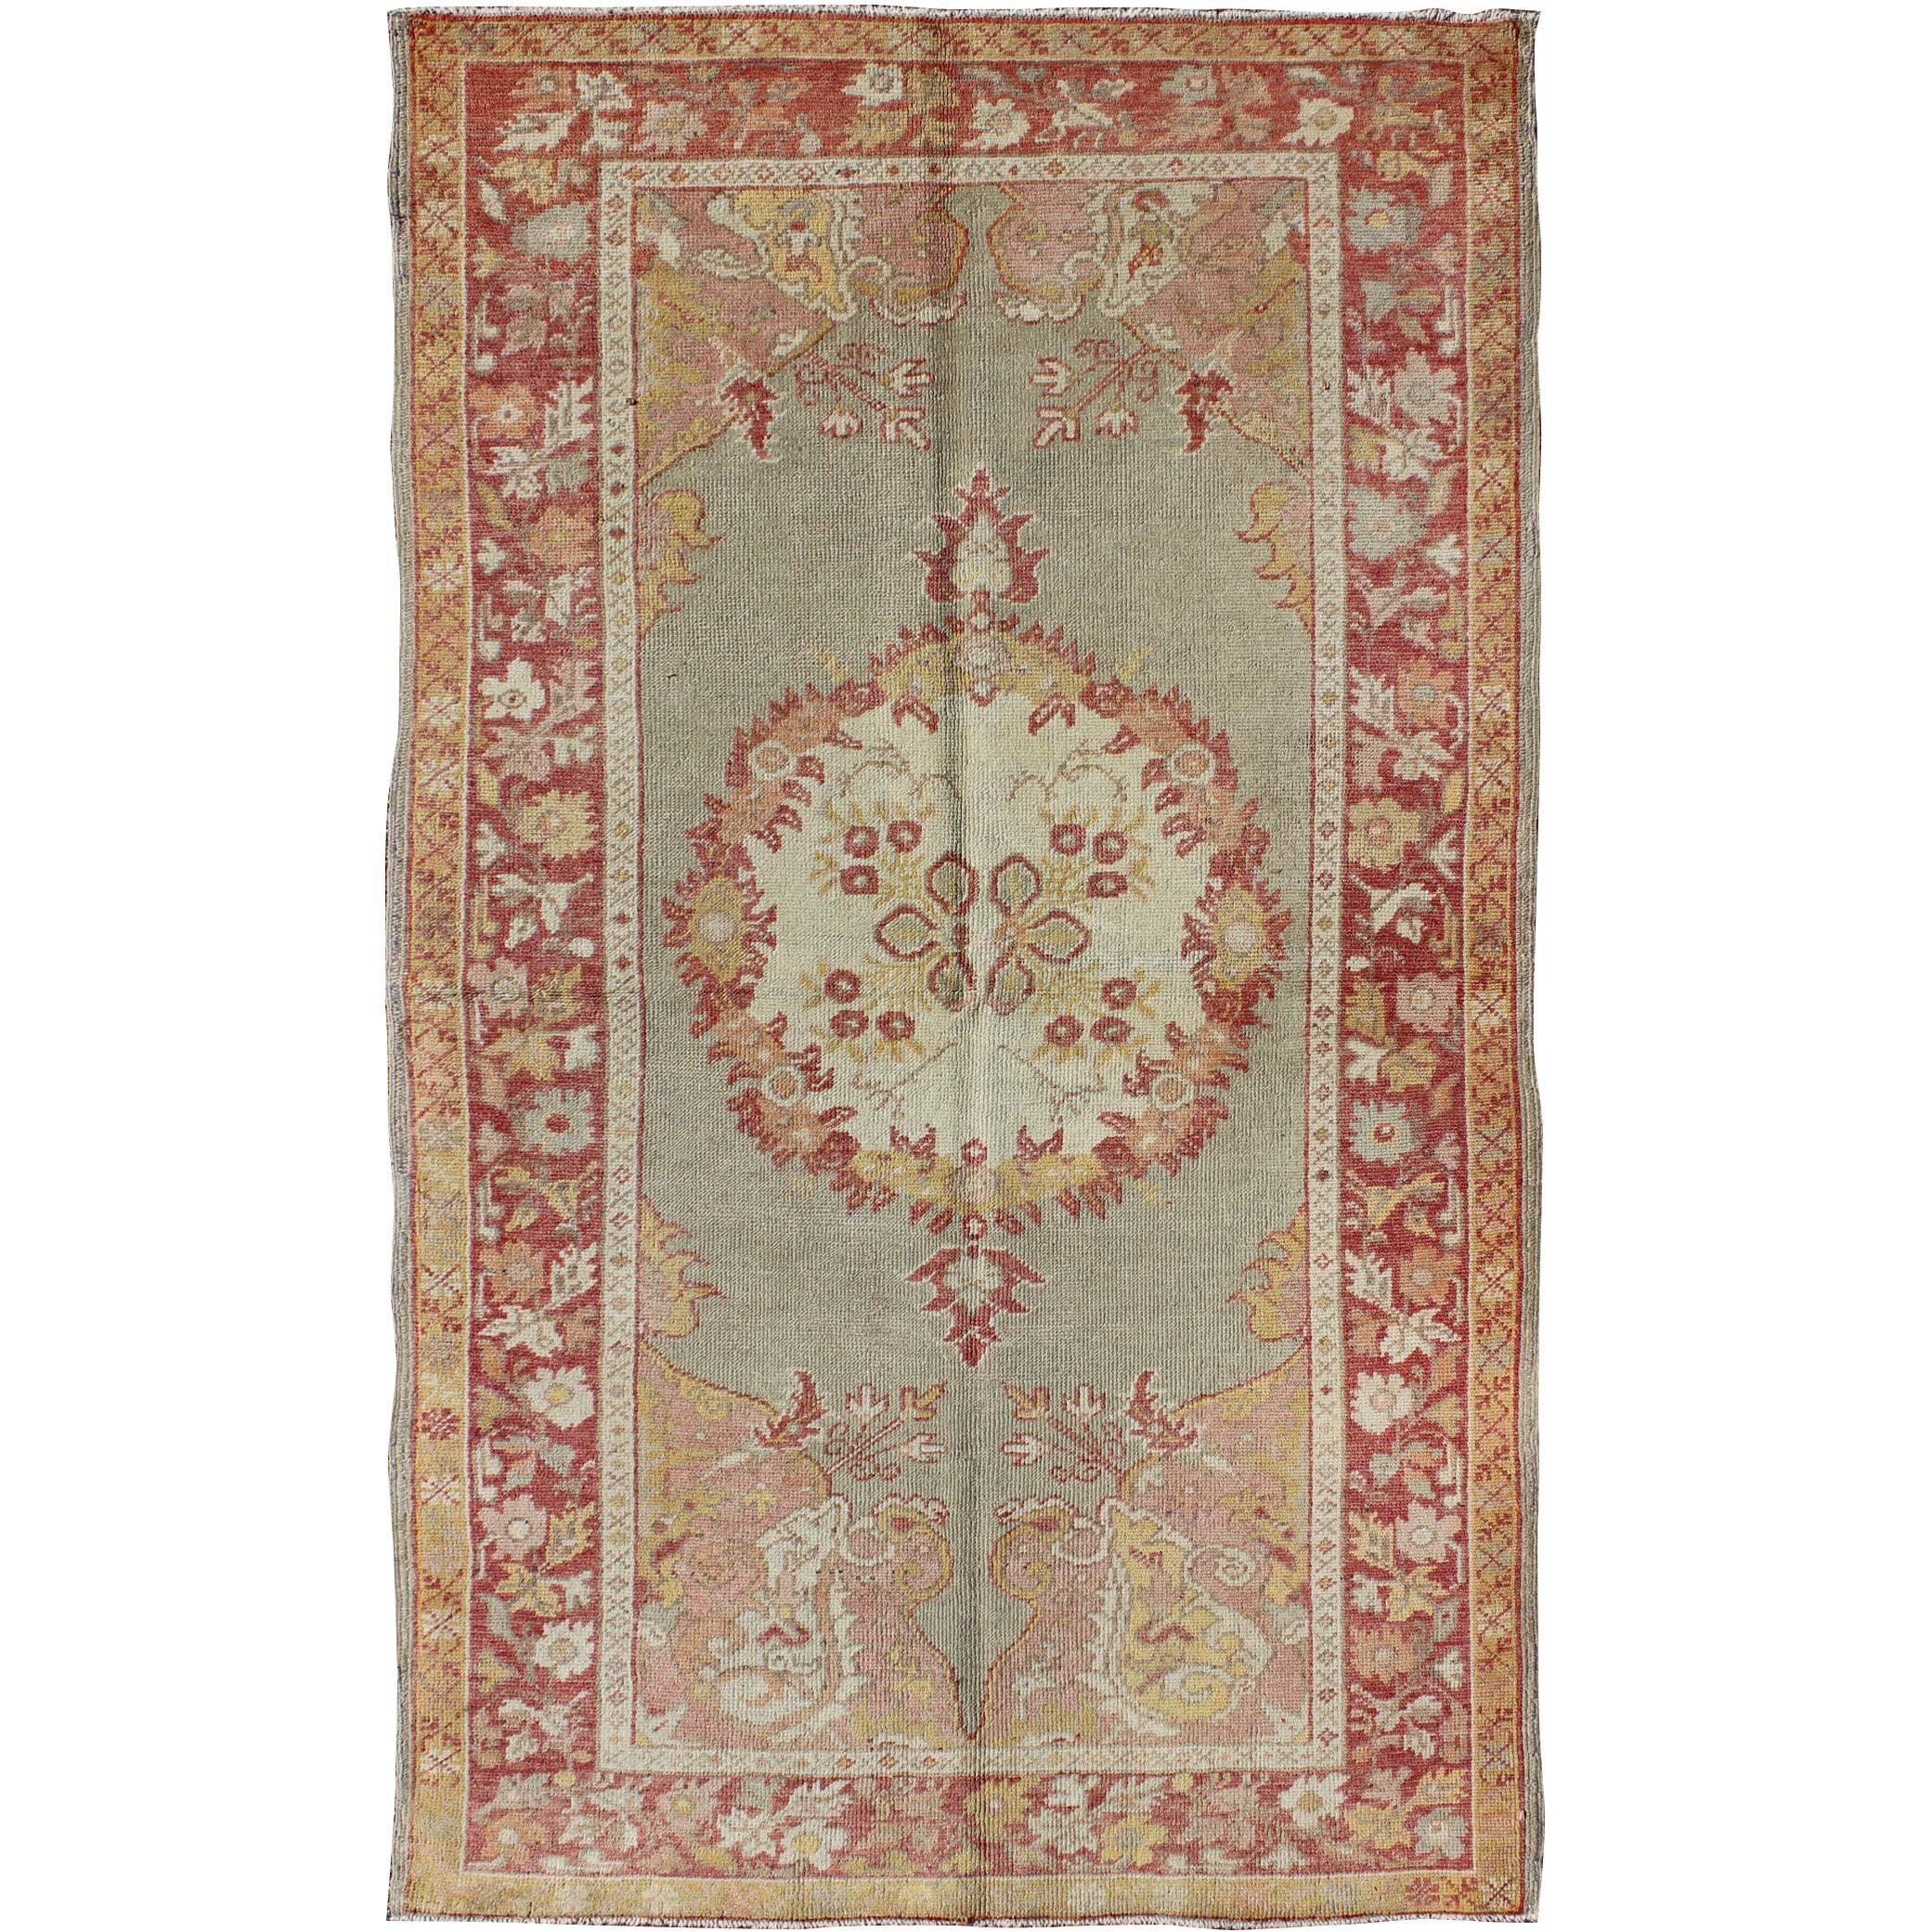 Türkischer Oushak-Teppich im Vintage-Stil mit floralem Medaillonmuster in Rot und Hellblau